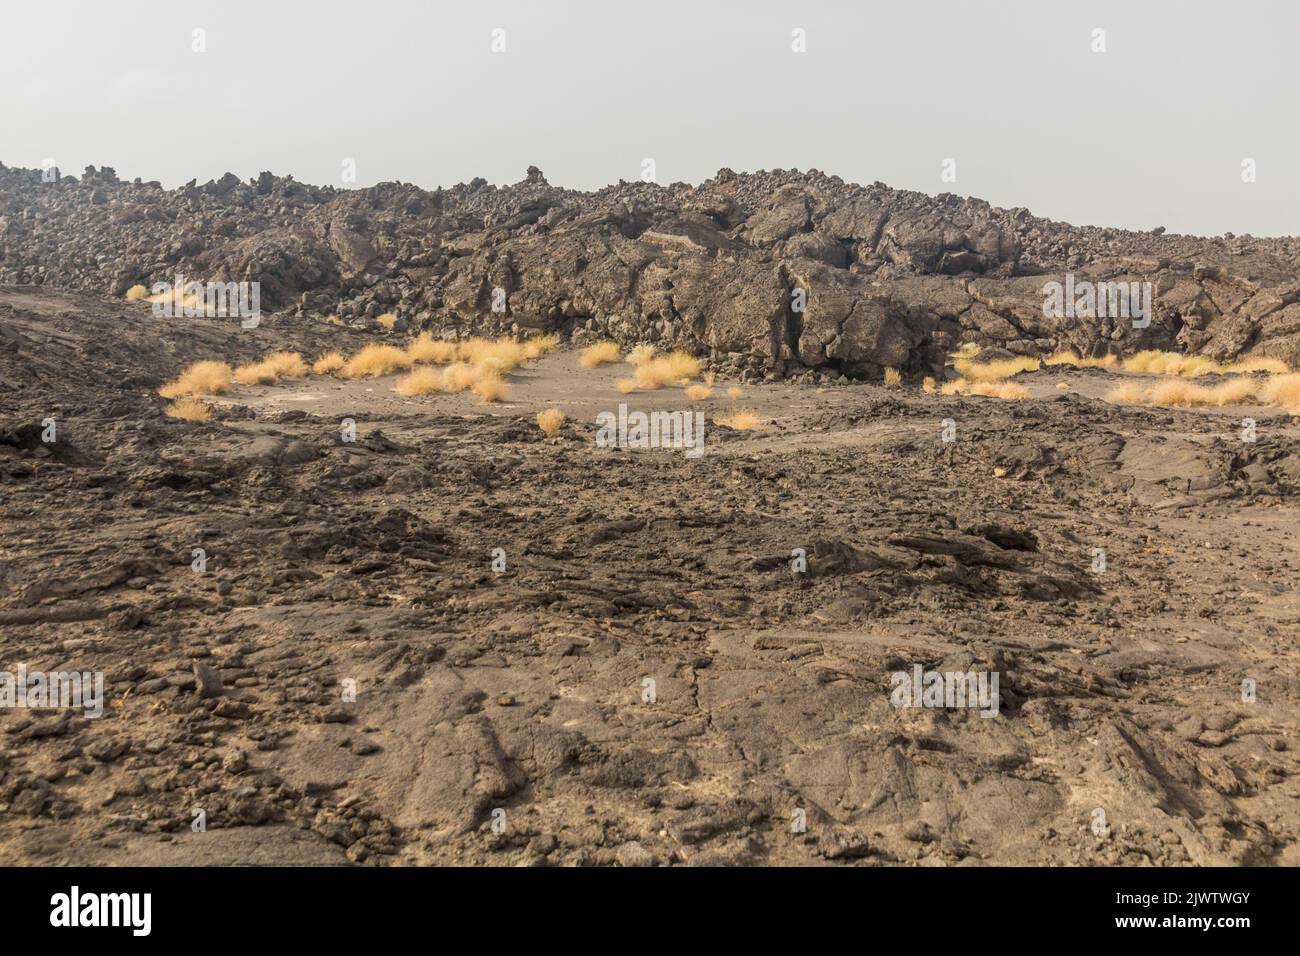 Lava field at Erta Ale volcano in Afar depression, Ethiopia Stock Photo